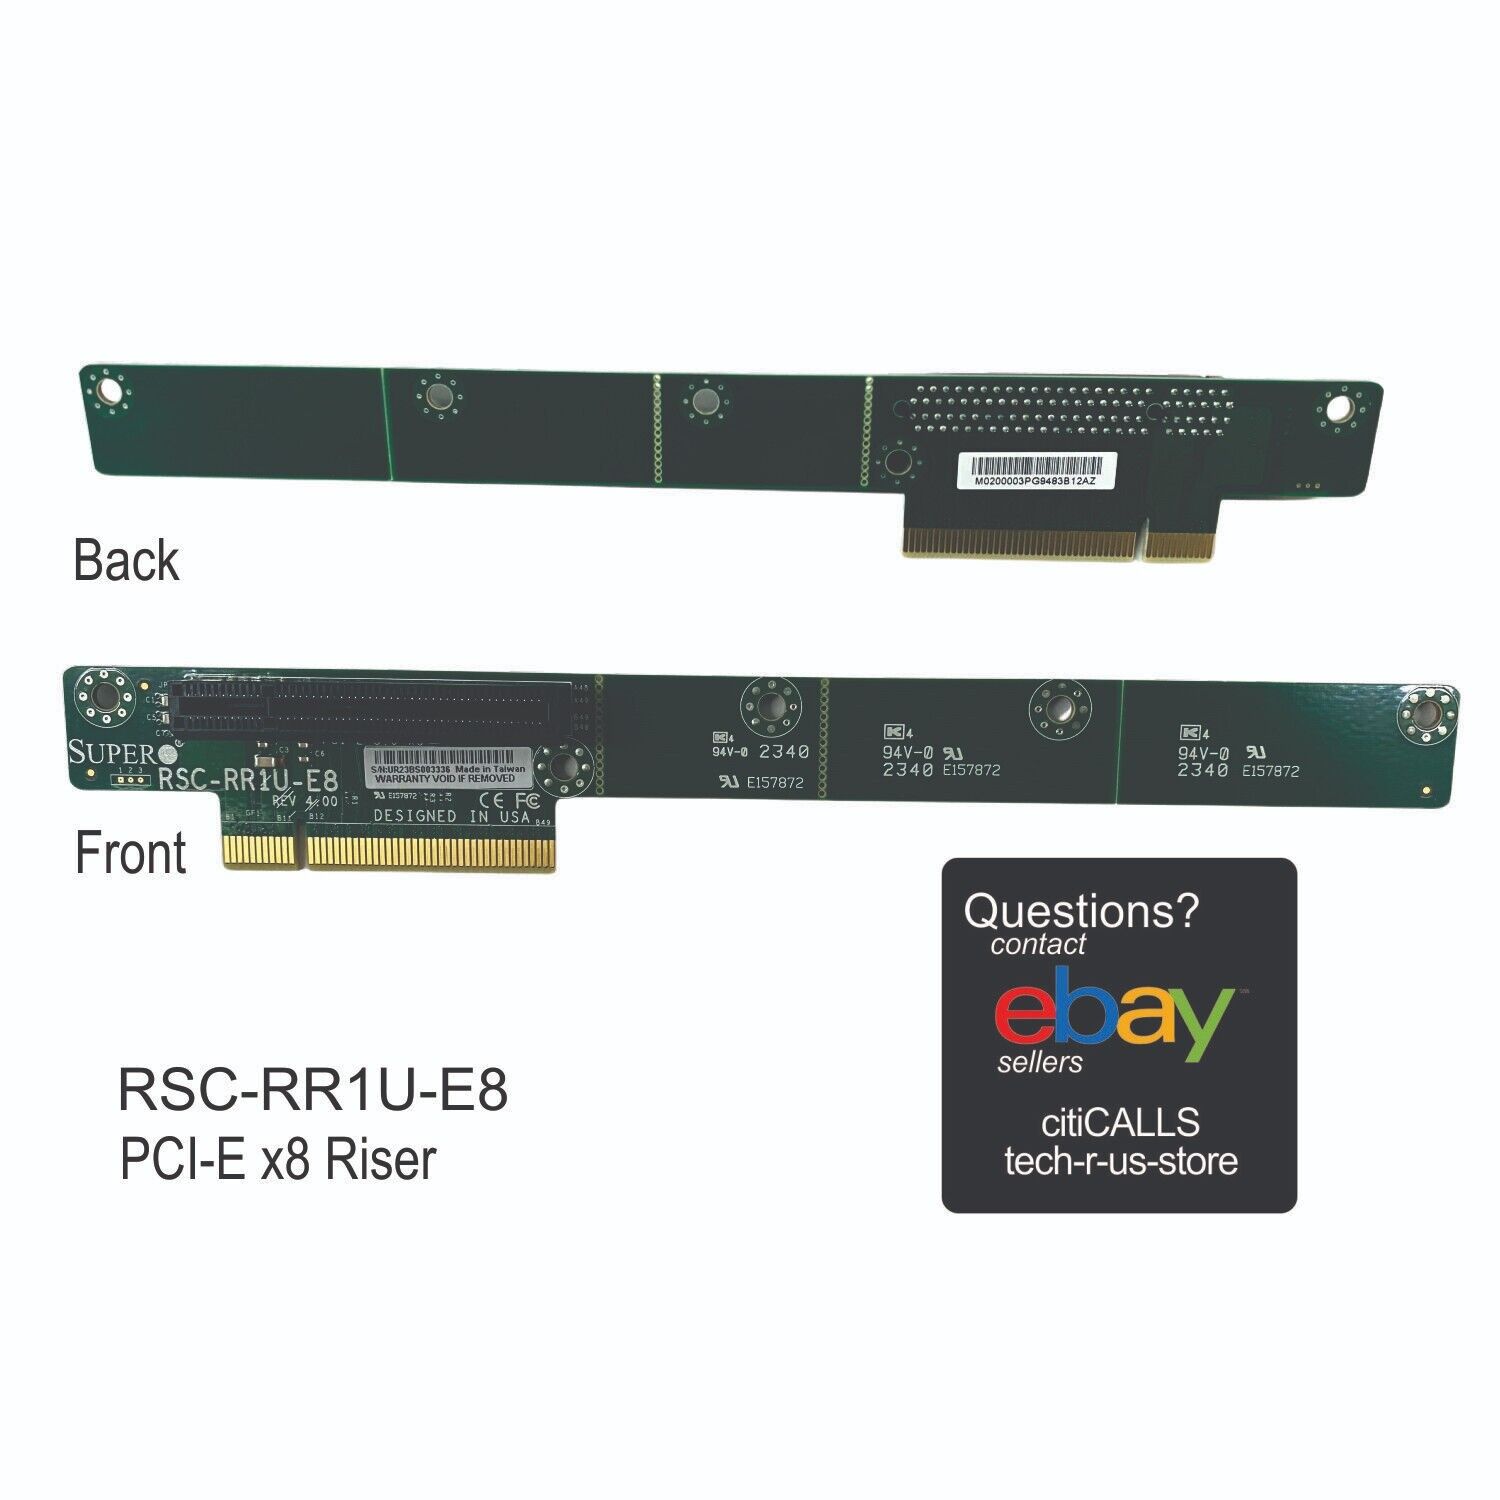 Supermicro RSC-RR1U-E8 Accessory 1U Universal (SXB-E) to PCI Express X9 Ready